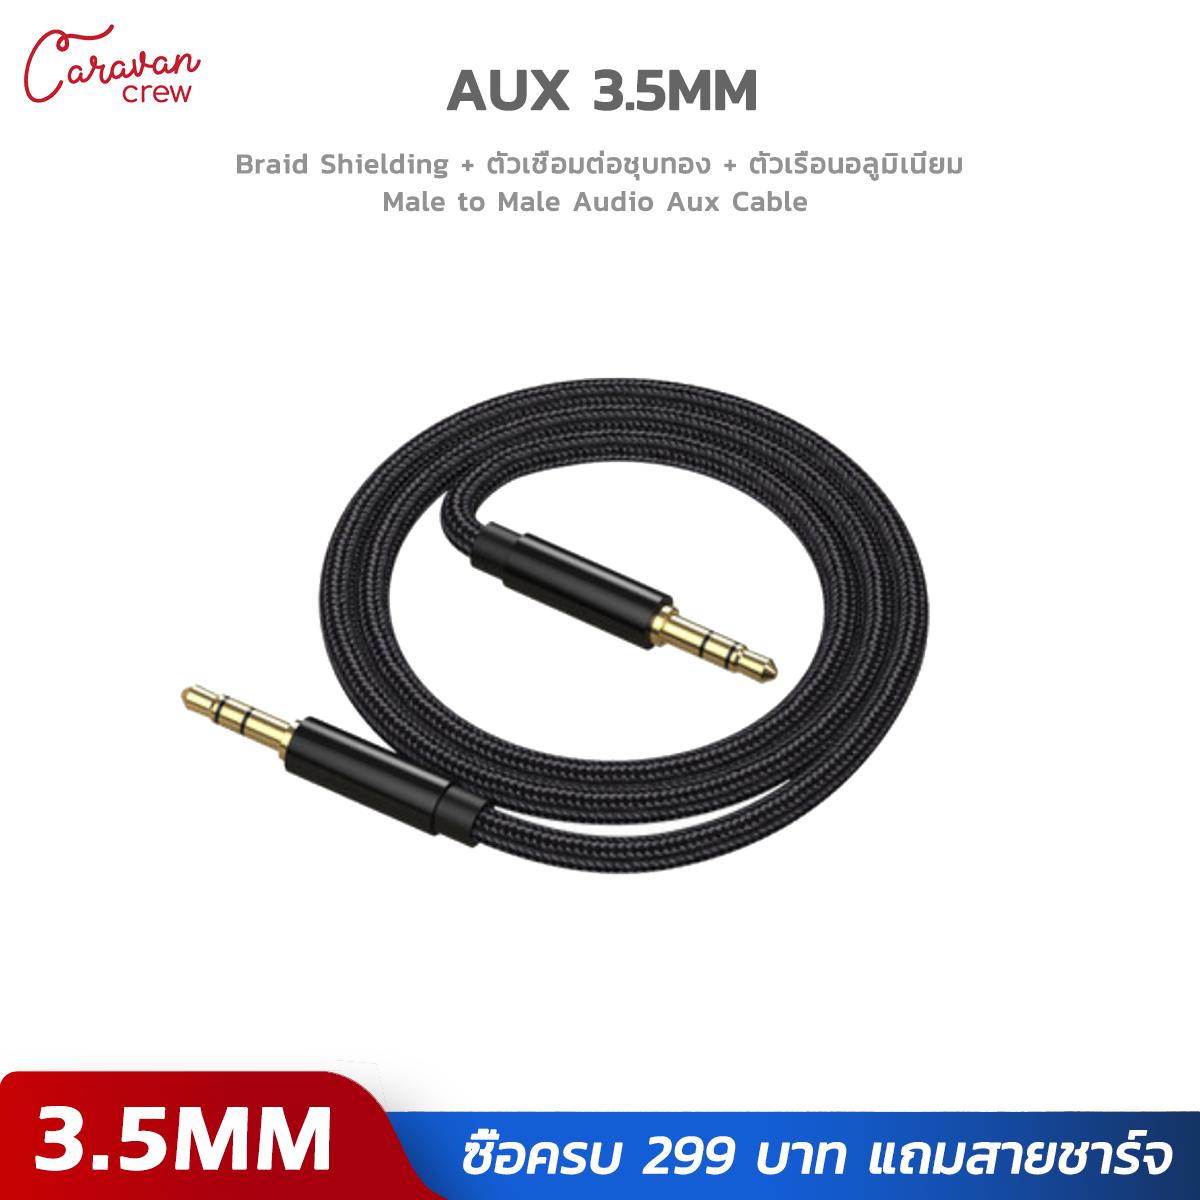 สาย 3.5mm to 3.5mm AUX AUDIO Cable รุ่น Caravan Crew Male to Male Stereo Professional HiFi Cable Auxiliary